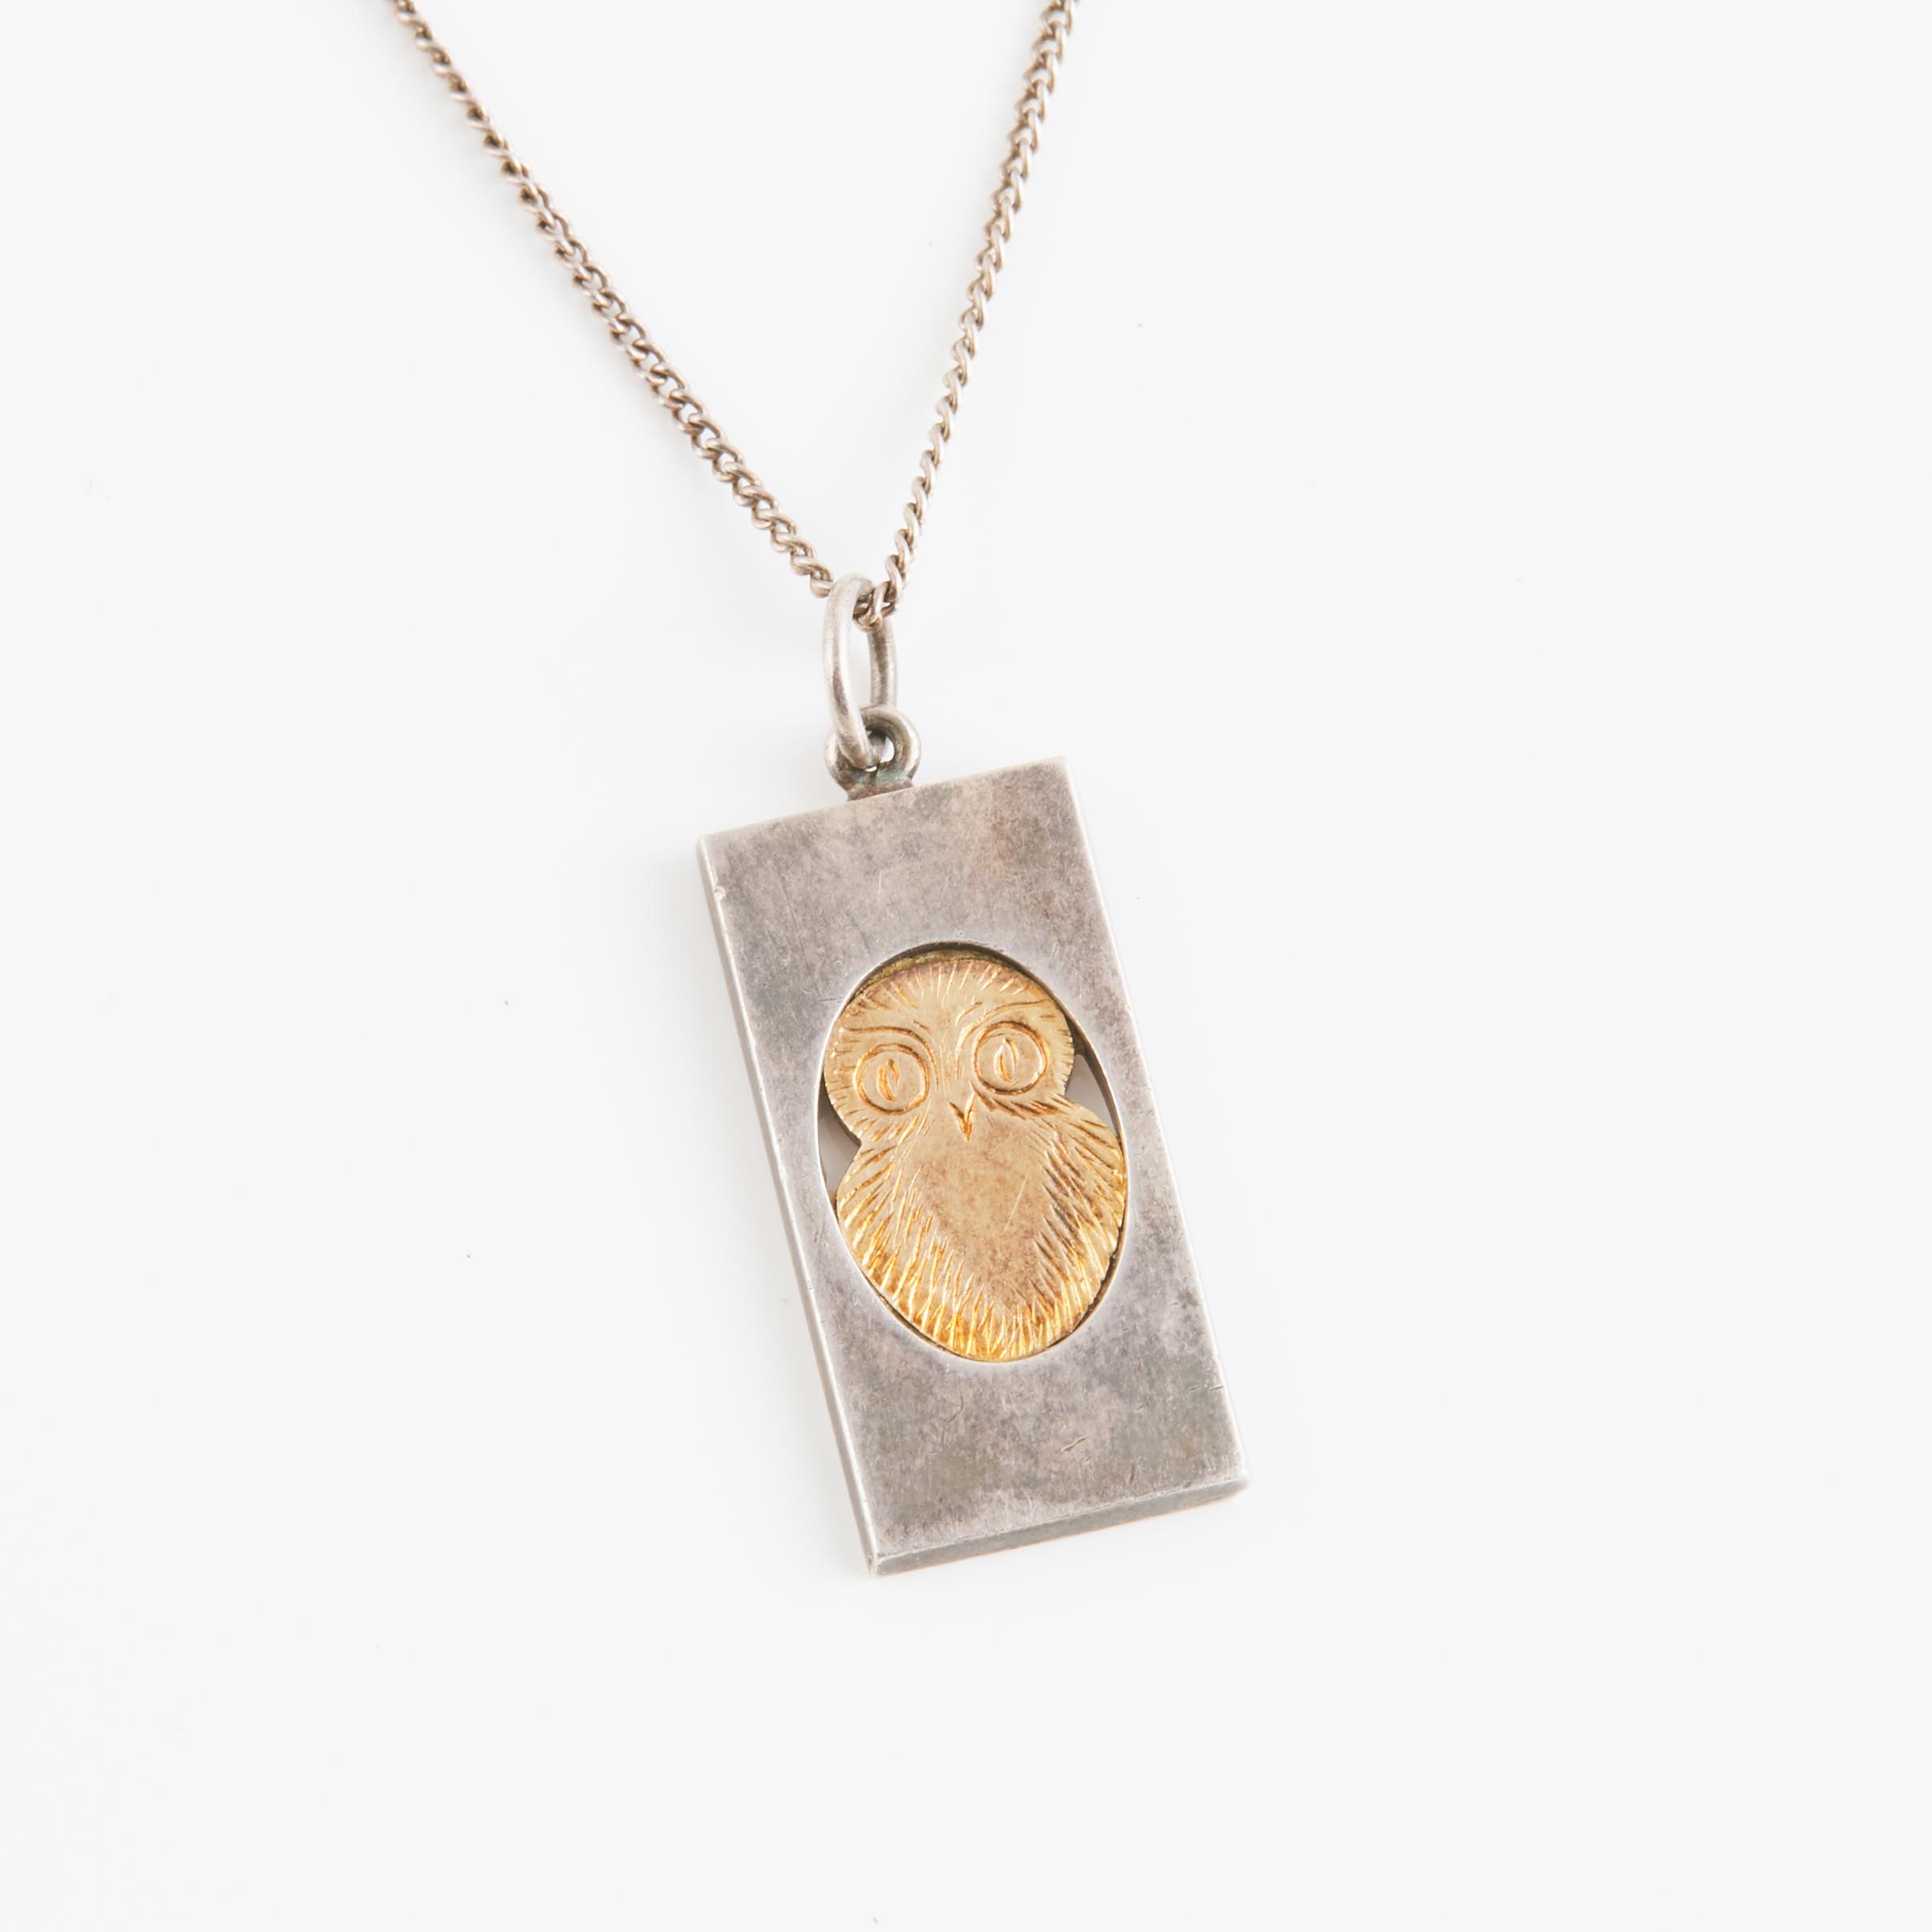 Kupitaan Kulta Finnish Sterling Silver Pendant